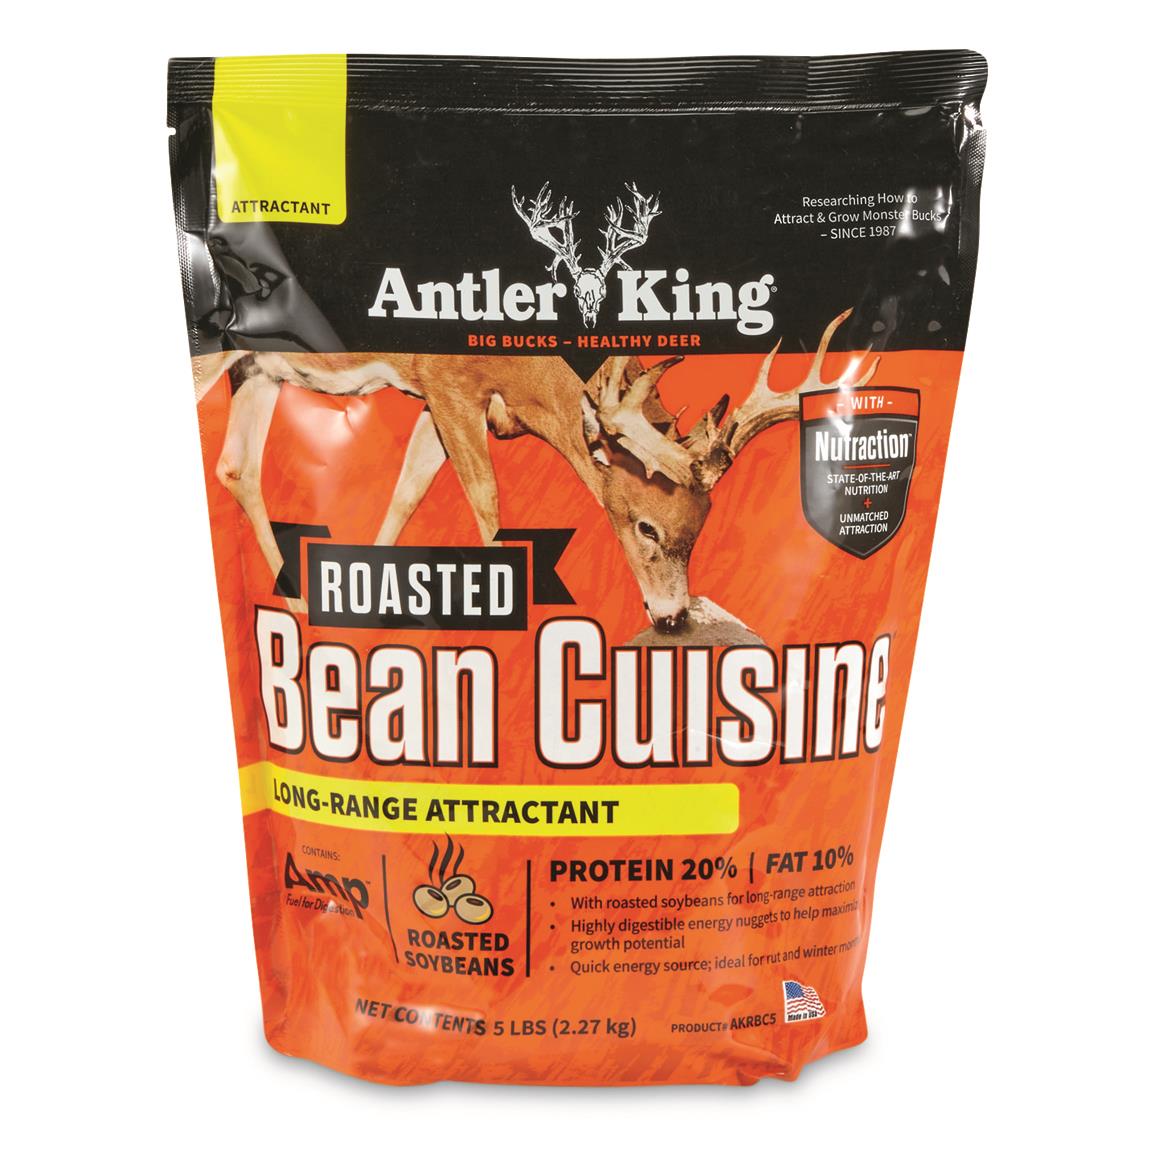 Antler King Roasted Bean Cuisine, 5-lb. Bag